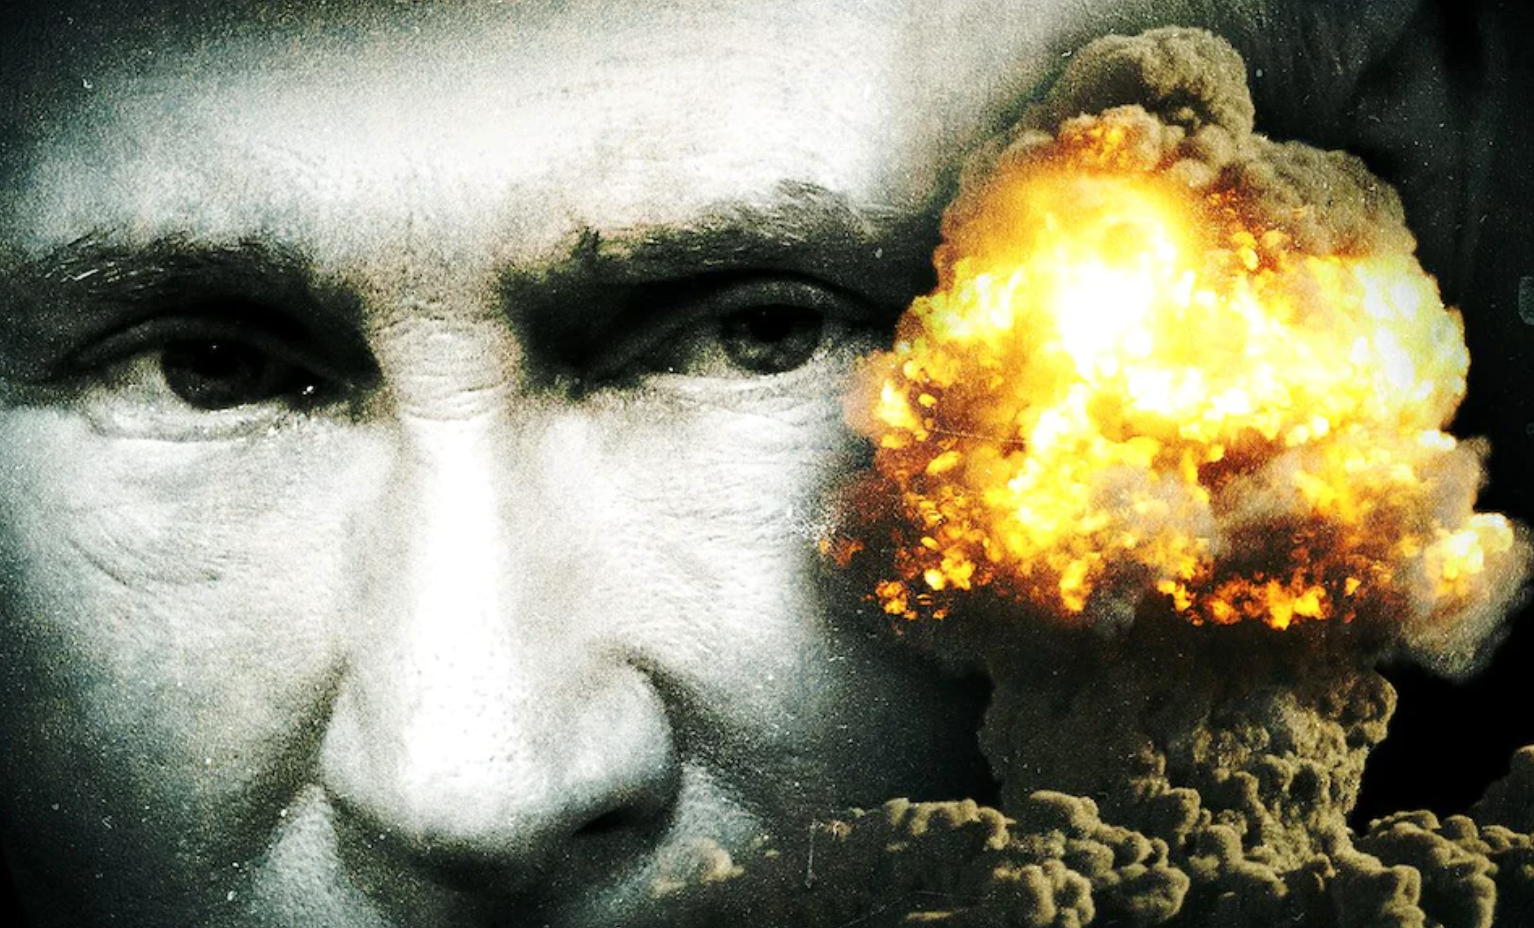 Va arunca Rusia bomba nucleară în Rusia? Cea mai mare amenințare pentru Moscova vine din interior